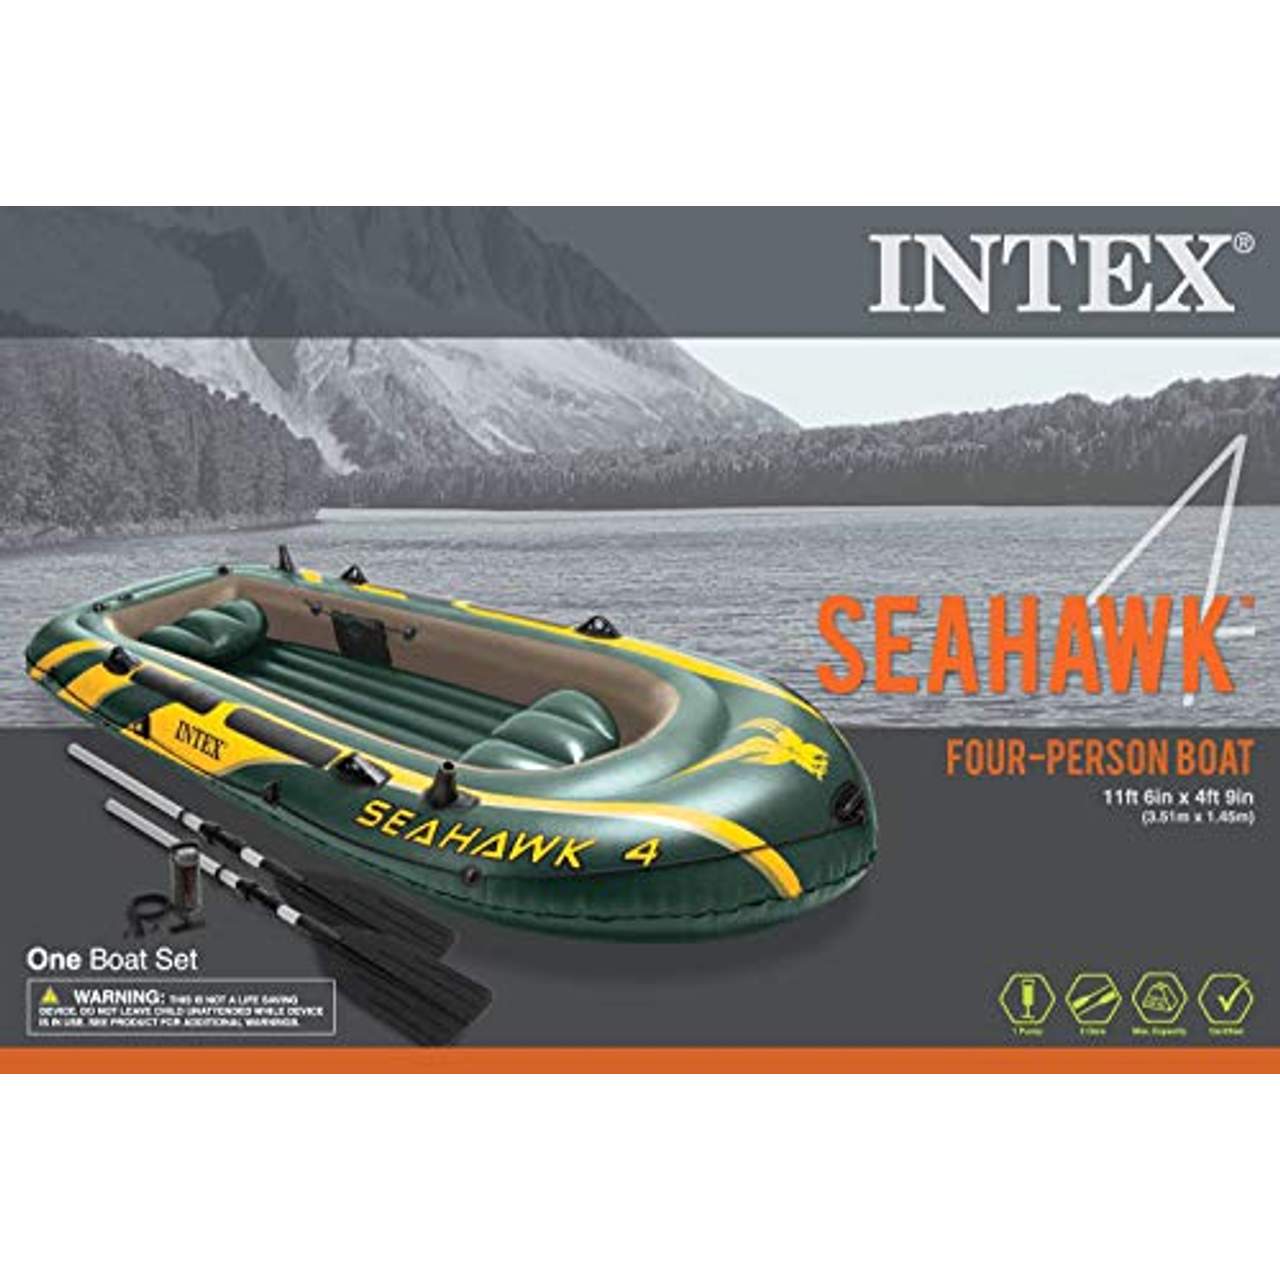 Intex Seahawk 4 